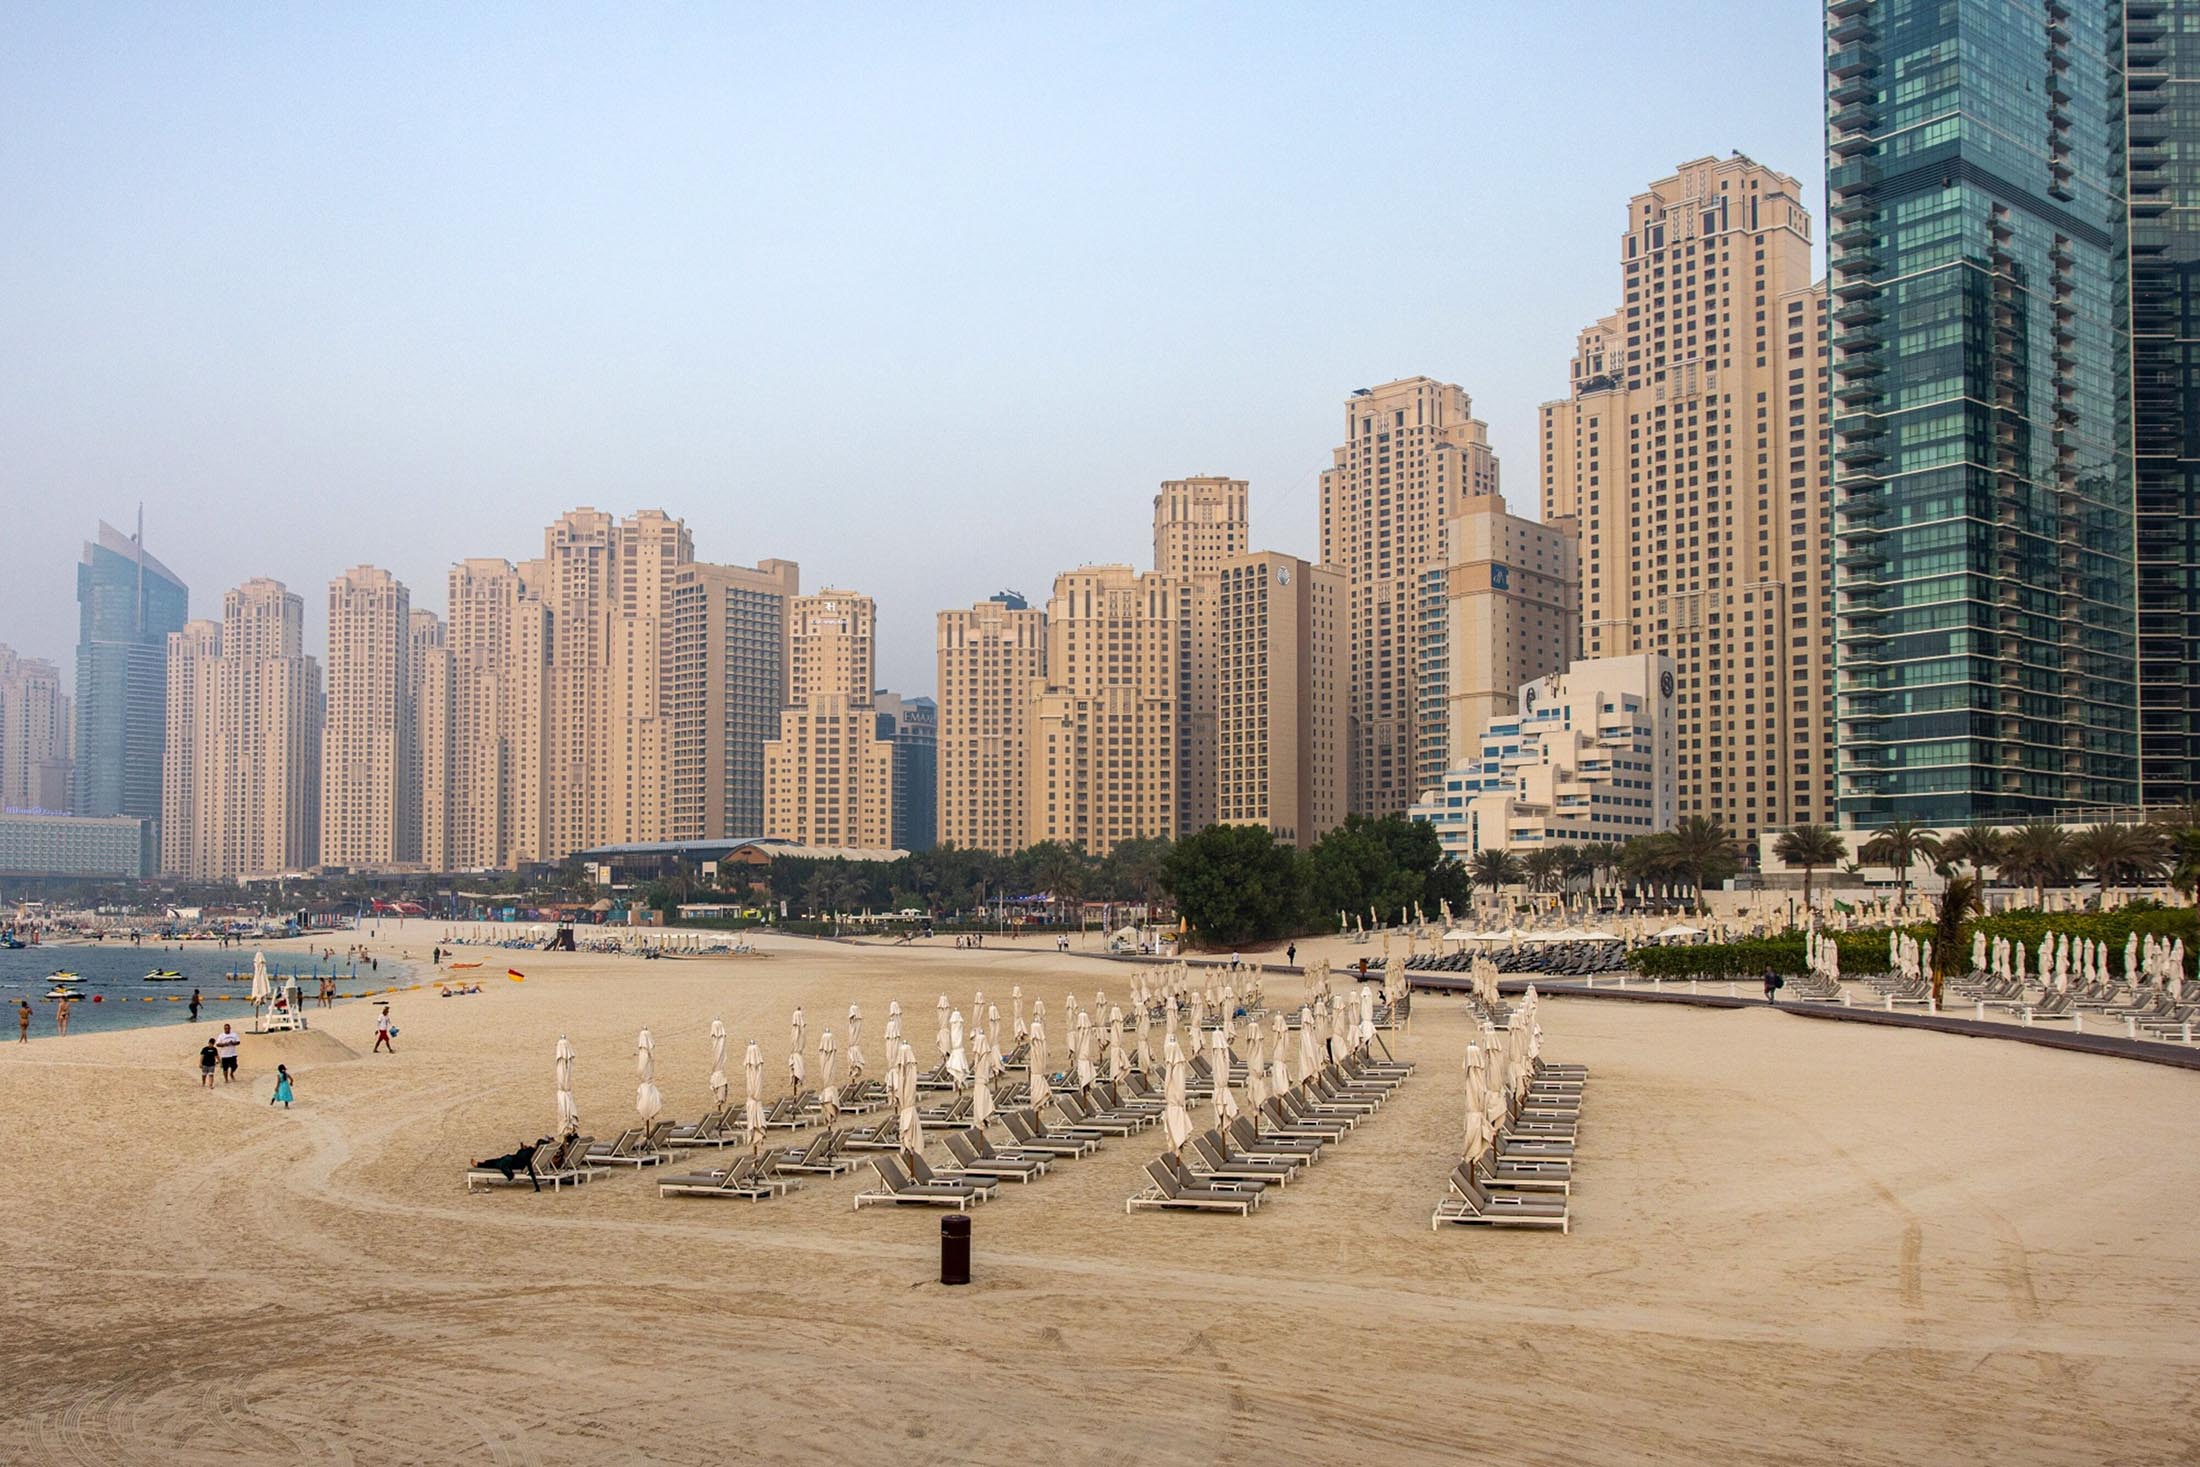 Sunbeds on the beach at Jumeirah Beach Residence in Dubai.&nbsp;